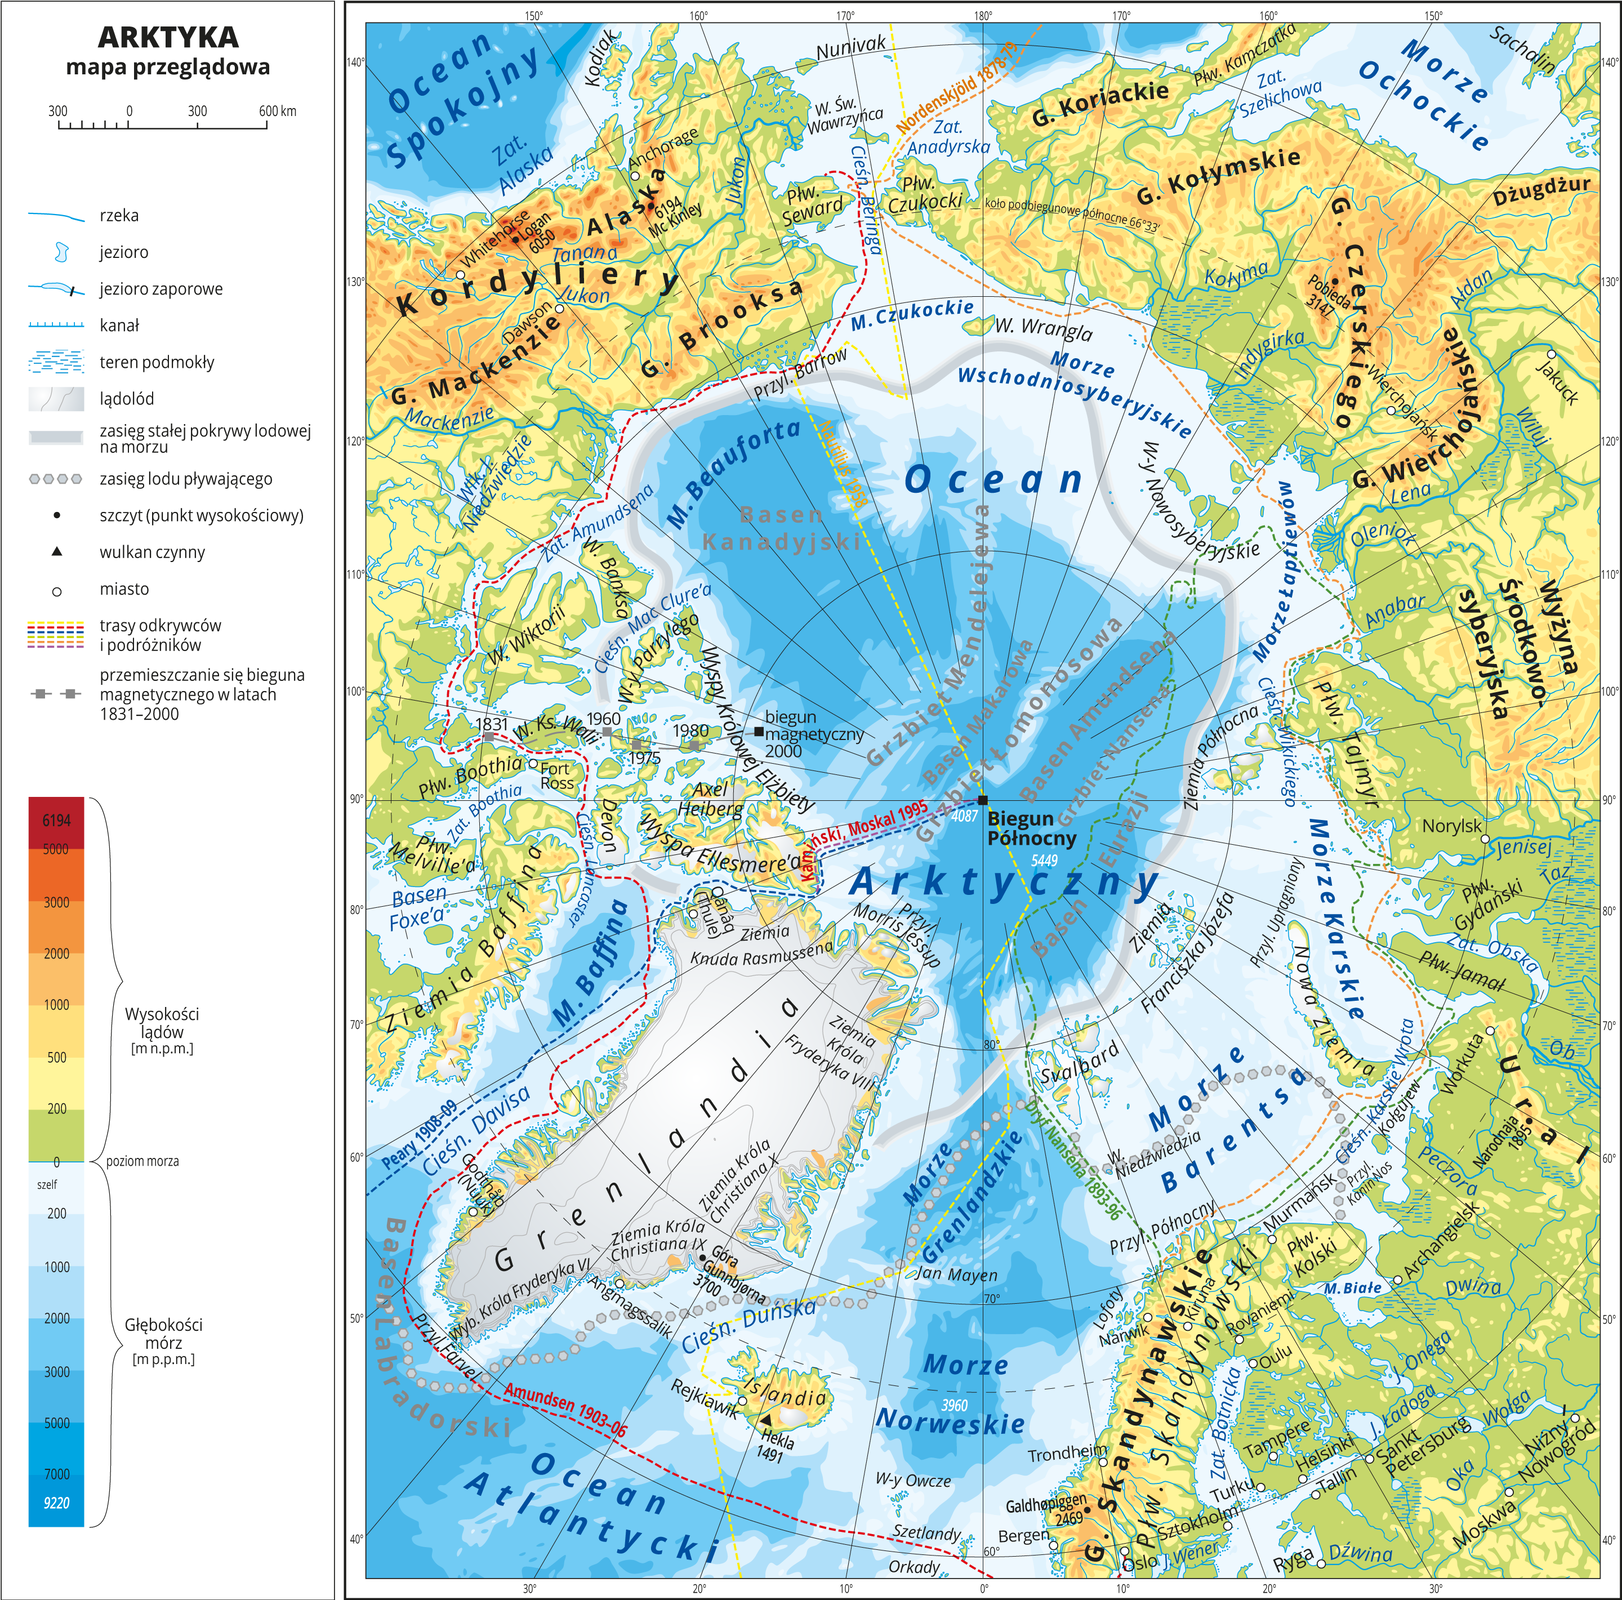 Ilustracja przedstawia mapę przeglądową Arktyki. W obrębie lądów występują obszary w kolorze zielonym, żółtym, pomarańczowym i czerwonym. Morza zaznaczono sześcioma odcieniami koloru niebieskiego. Na mapie opisano nazwy wysp, półwyspów, głównych nizin, wyżyn i pasm górskich, mórz, zatok, rzek i jezior. Oznaczono i opisano główne miasta. Oznaczono czarnymi kropkami i opisano szczyty górskie. Mapa pokryta jest równoleżnikami i południkami. Dookoła mapy w białej ramce opisano współrzędne geograficzne co dziesięć stopni. W legendzie umieszczono i opisano znaki użyte na mapie.